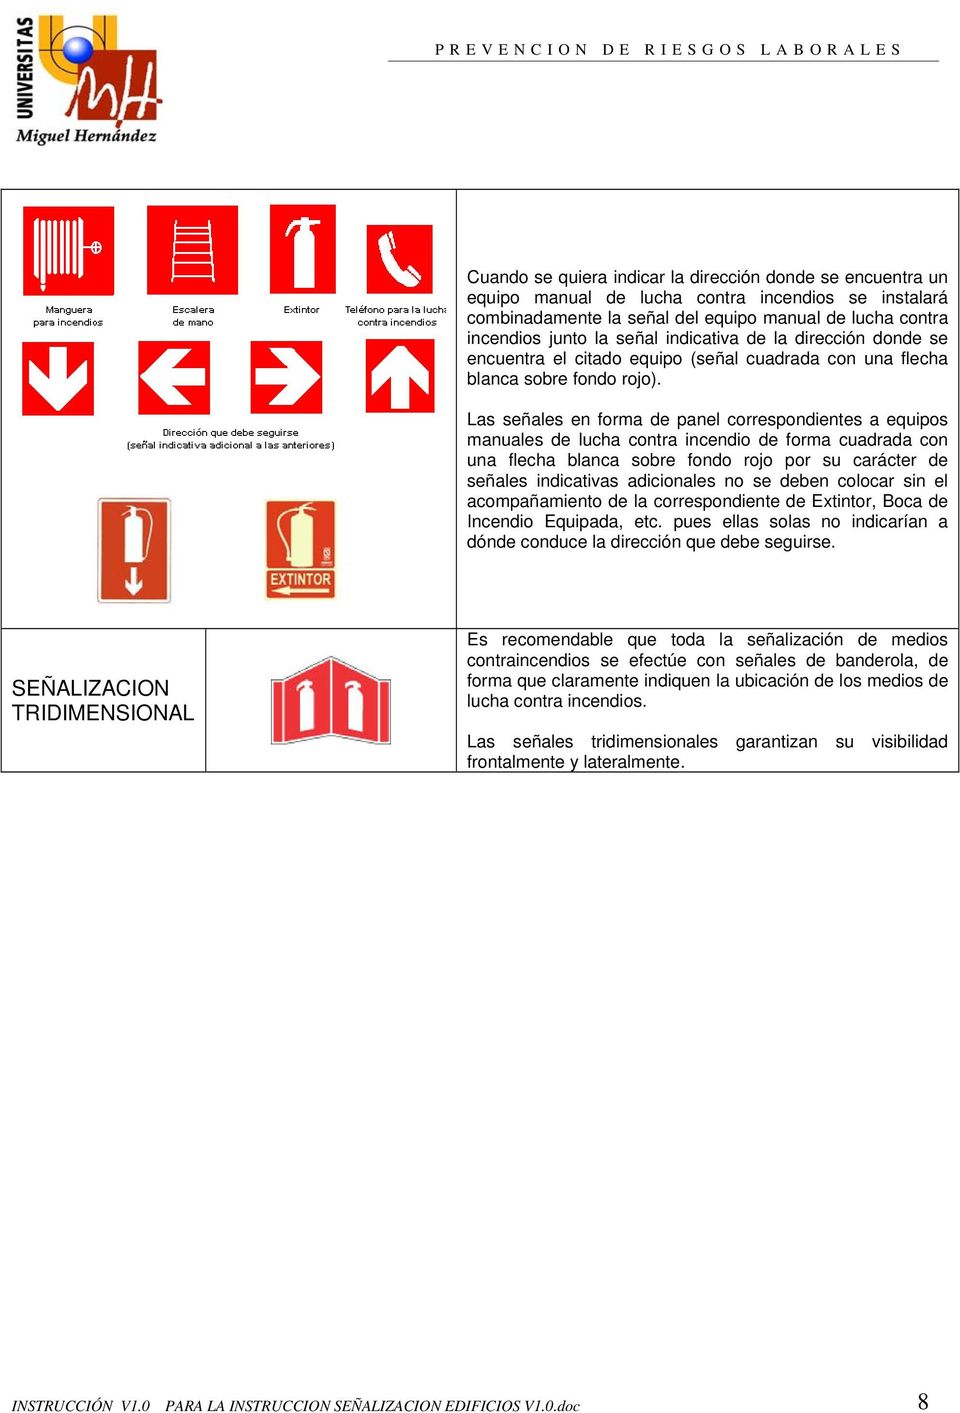 Las señales en forma de panel correspondientes a equipos manuales de lucha contra incendio de forma cuadrada con una flecha blanca sobre fondo rojo por su carácter de señales indicativas adicionales